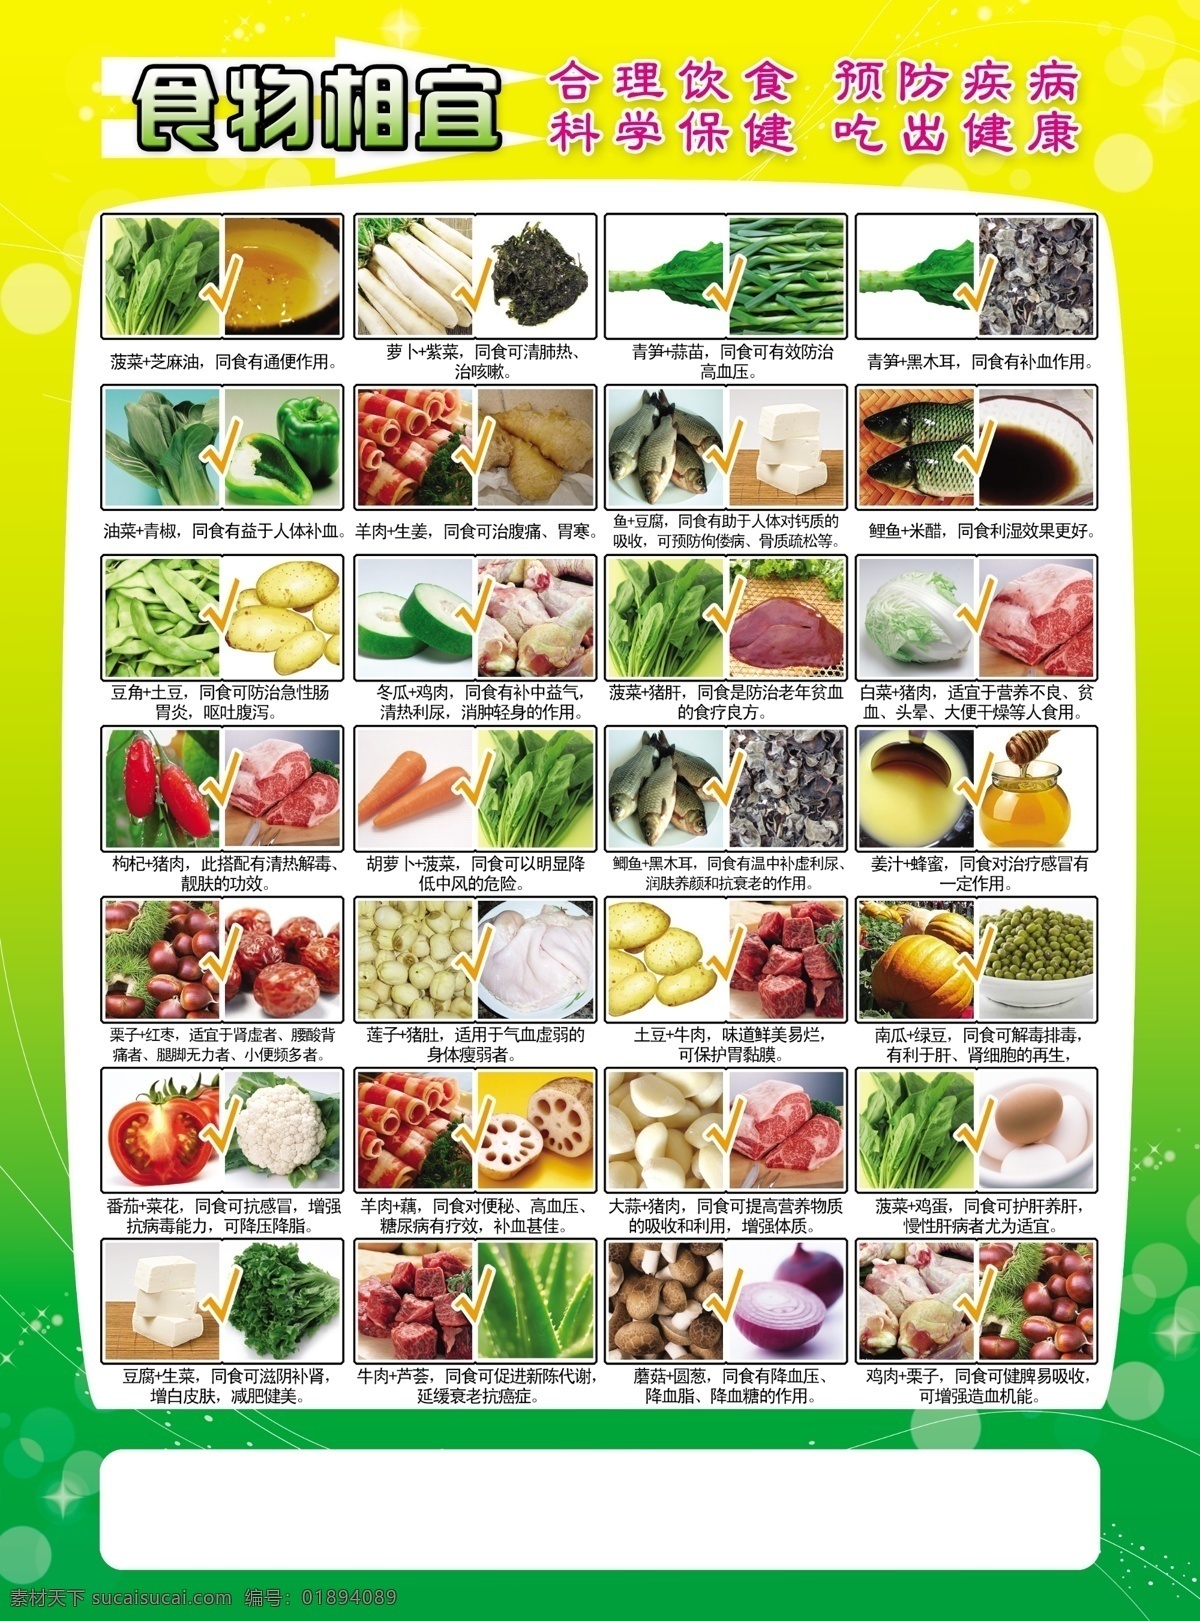 食物之相生 绿黄背景 梦幻星点 食品高清大图 养生食谱 食物相生 dm宣传单 广告设计模板 源文件